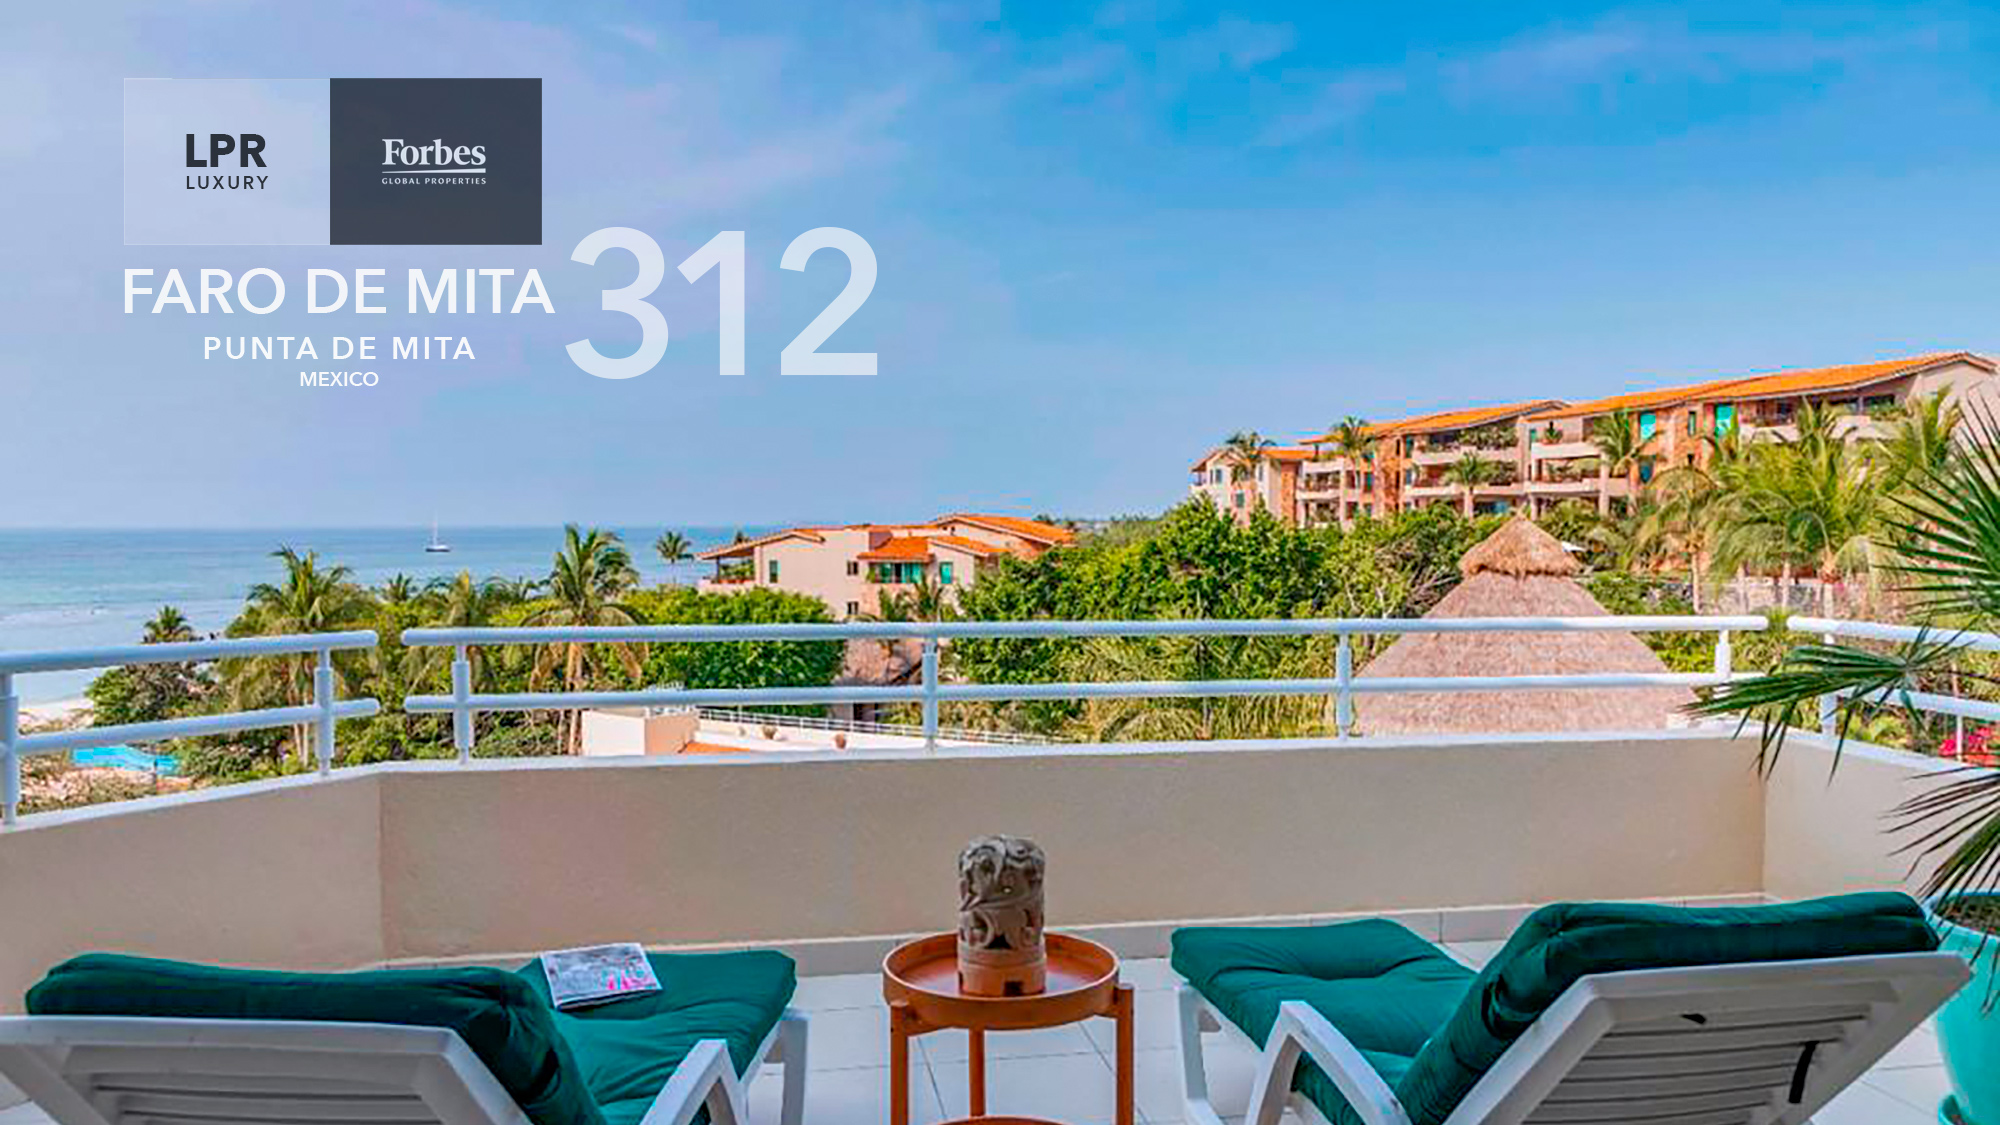 Aura - LPR Luxury Punta Mita Real Estate and Vacation Rentals